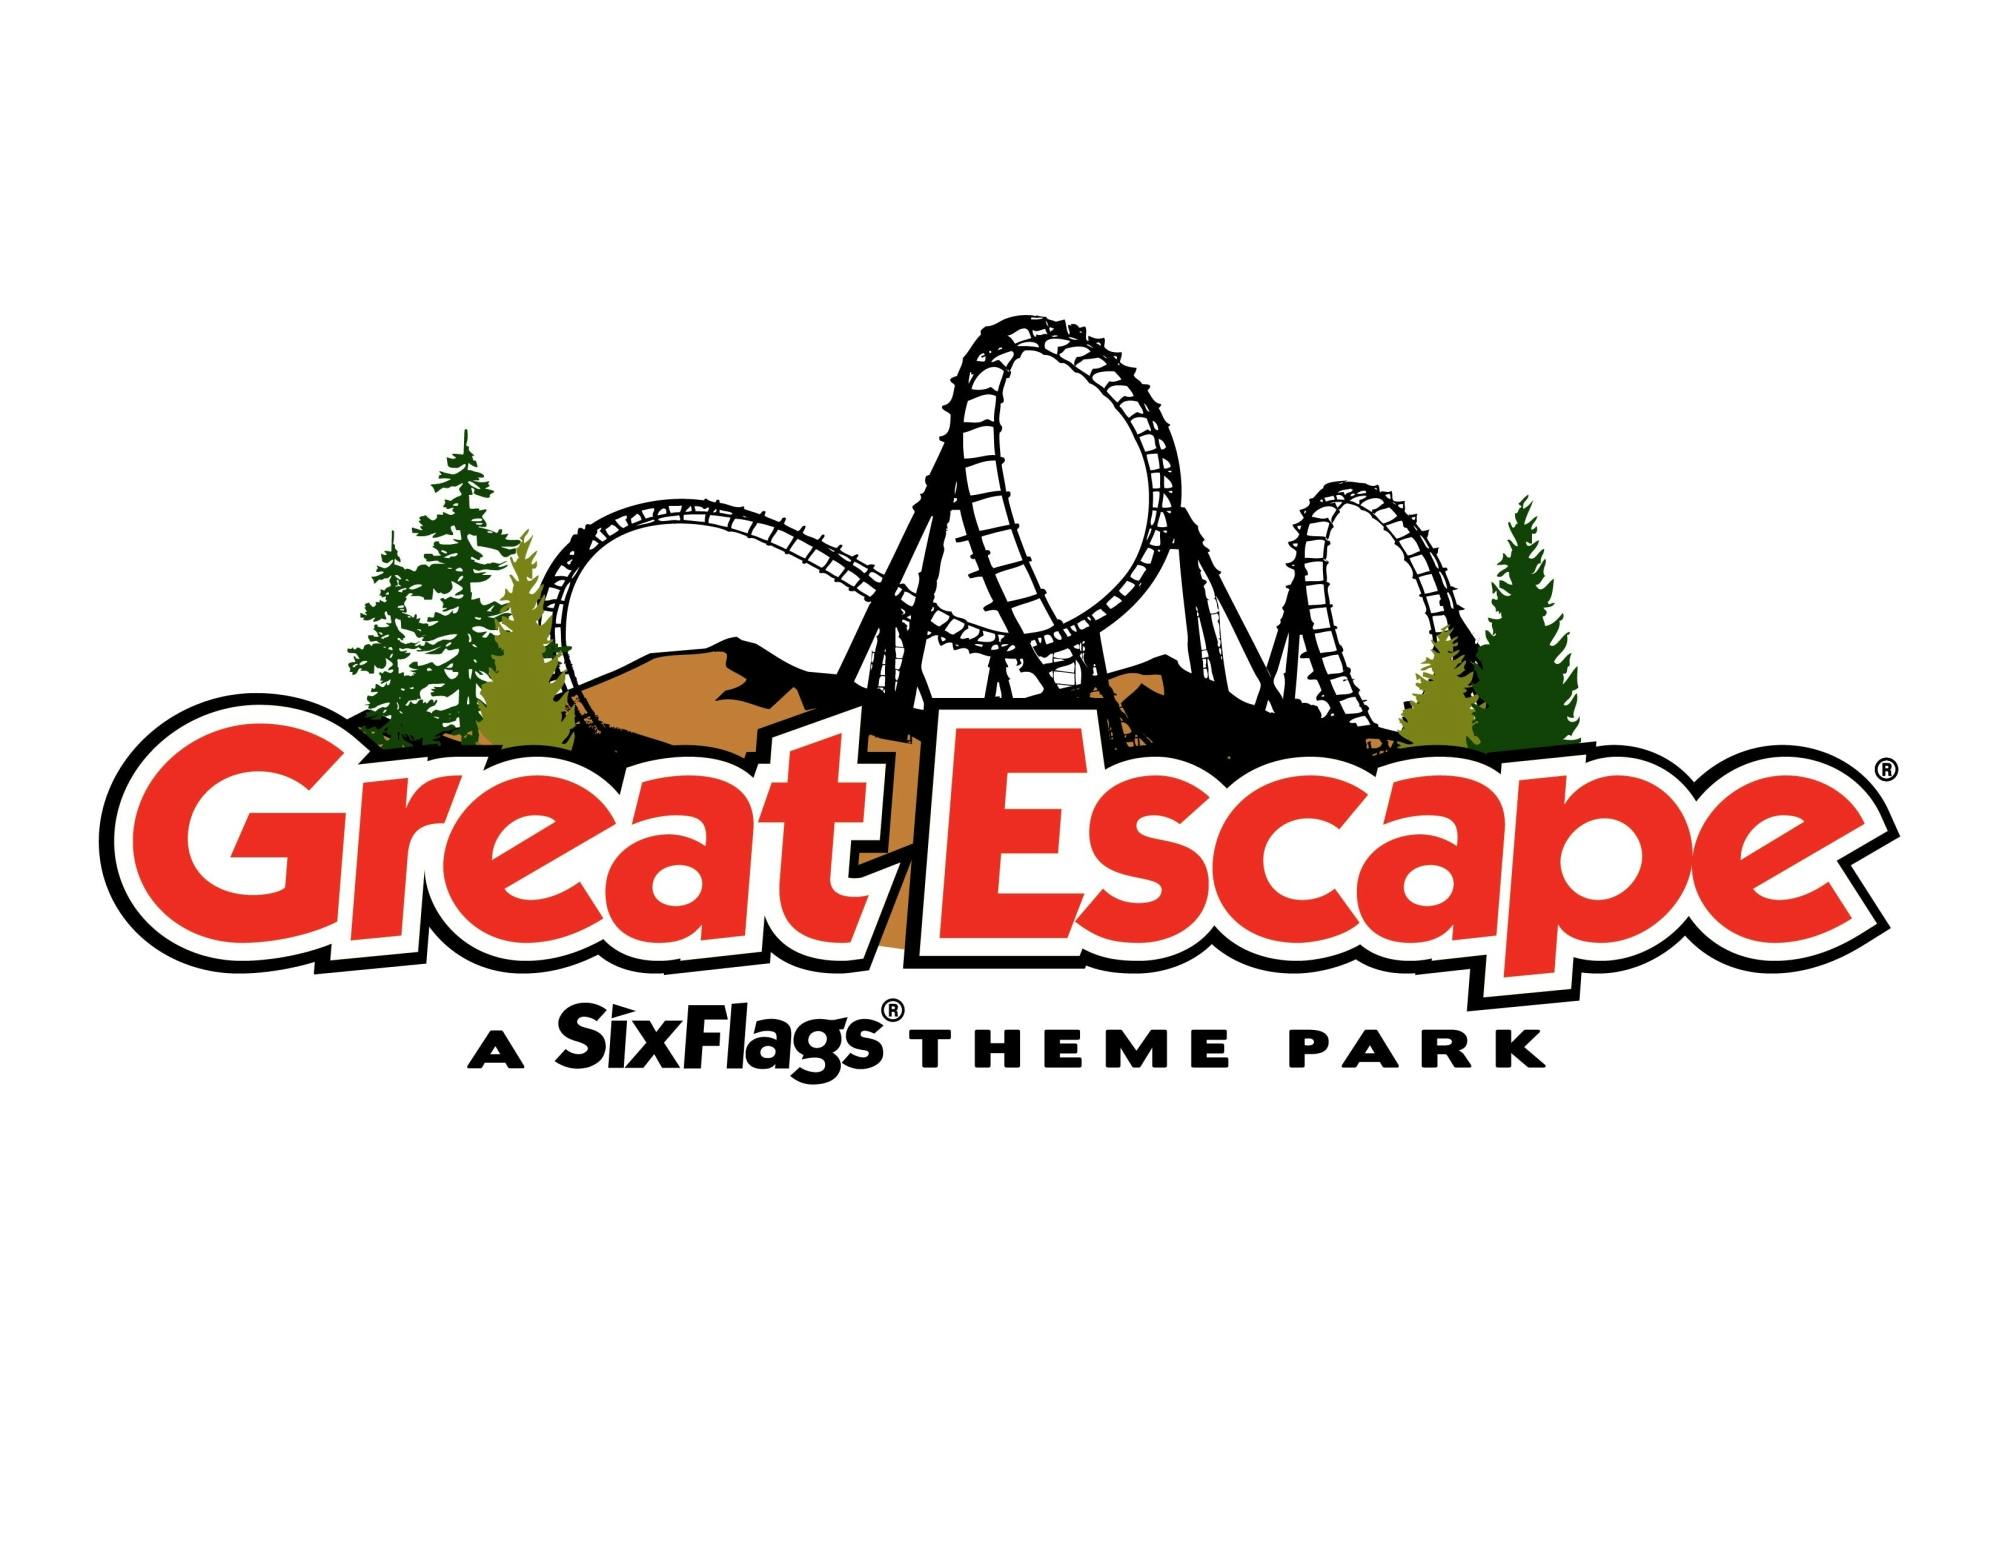 Eintrittskarten für Six Flags The Great Escape und Hurricane Harbor